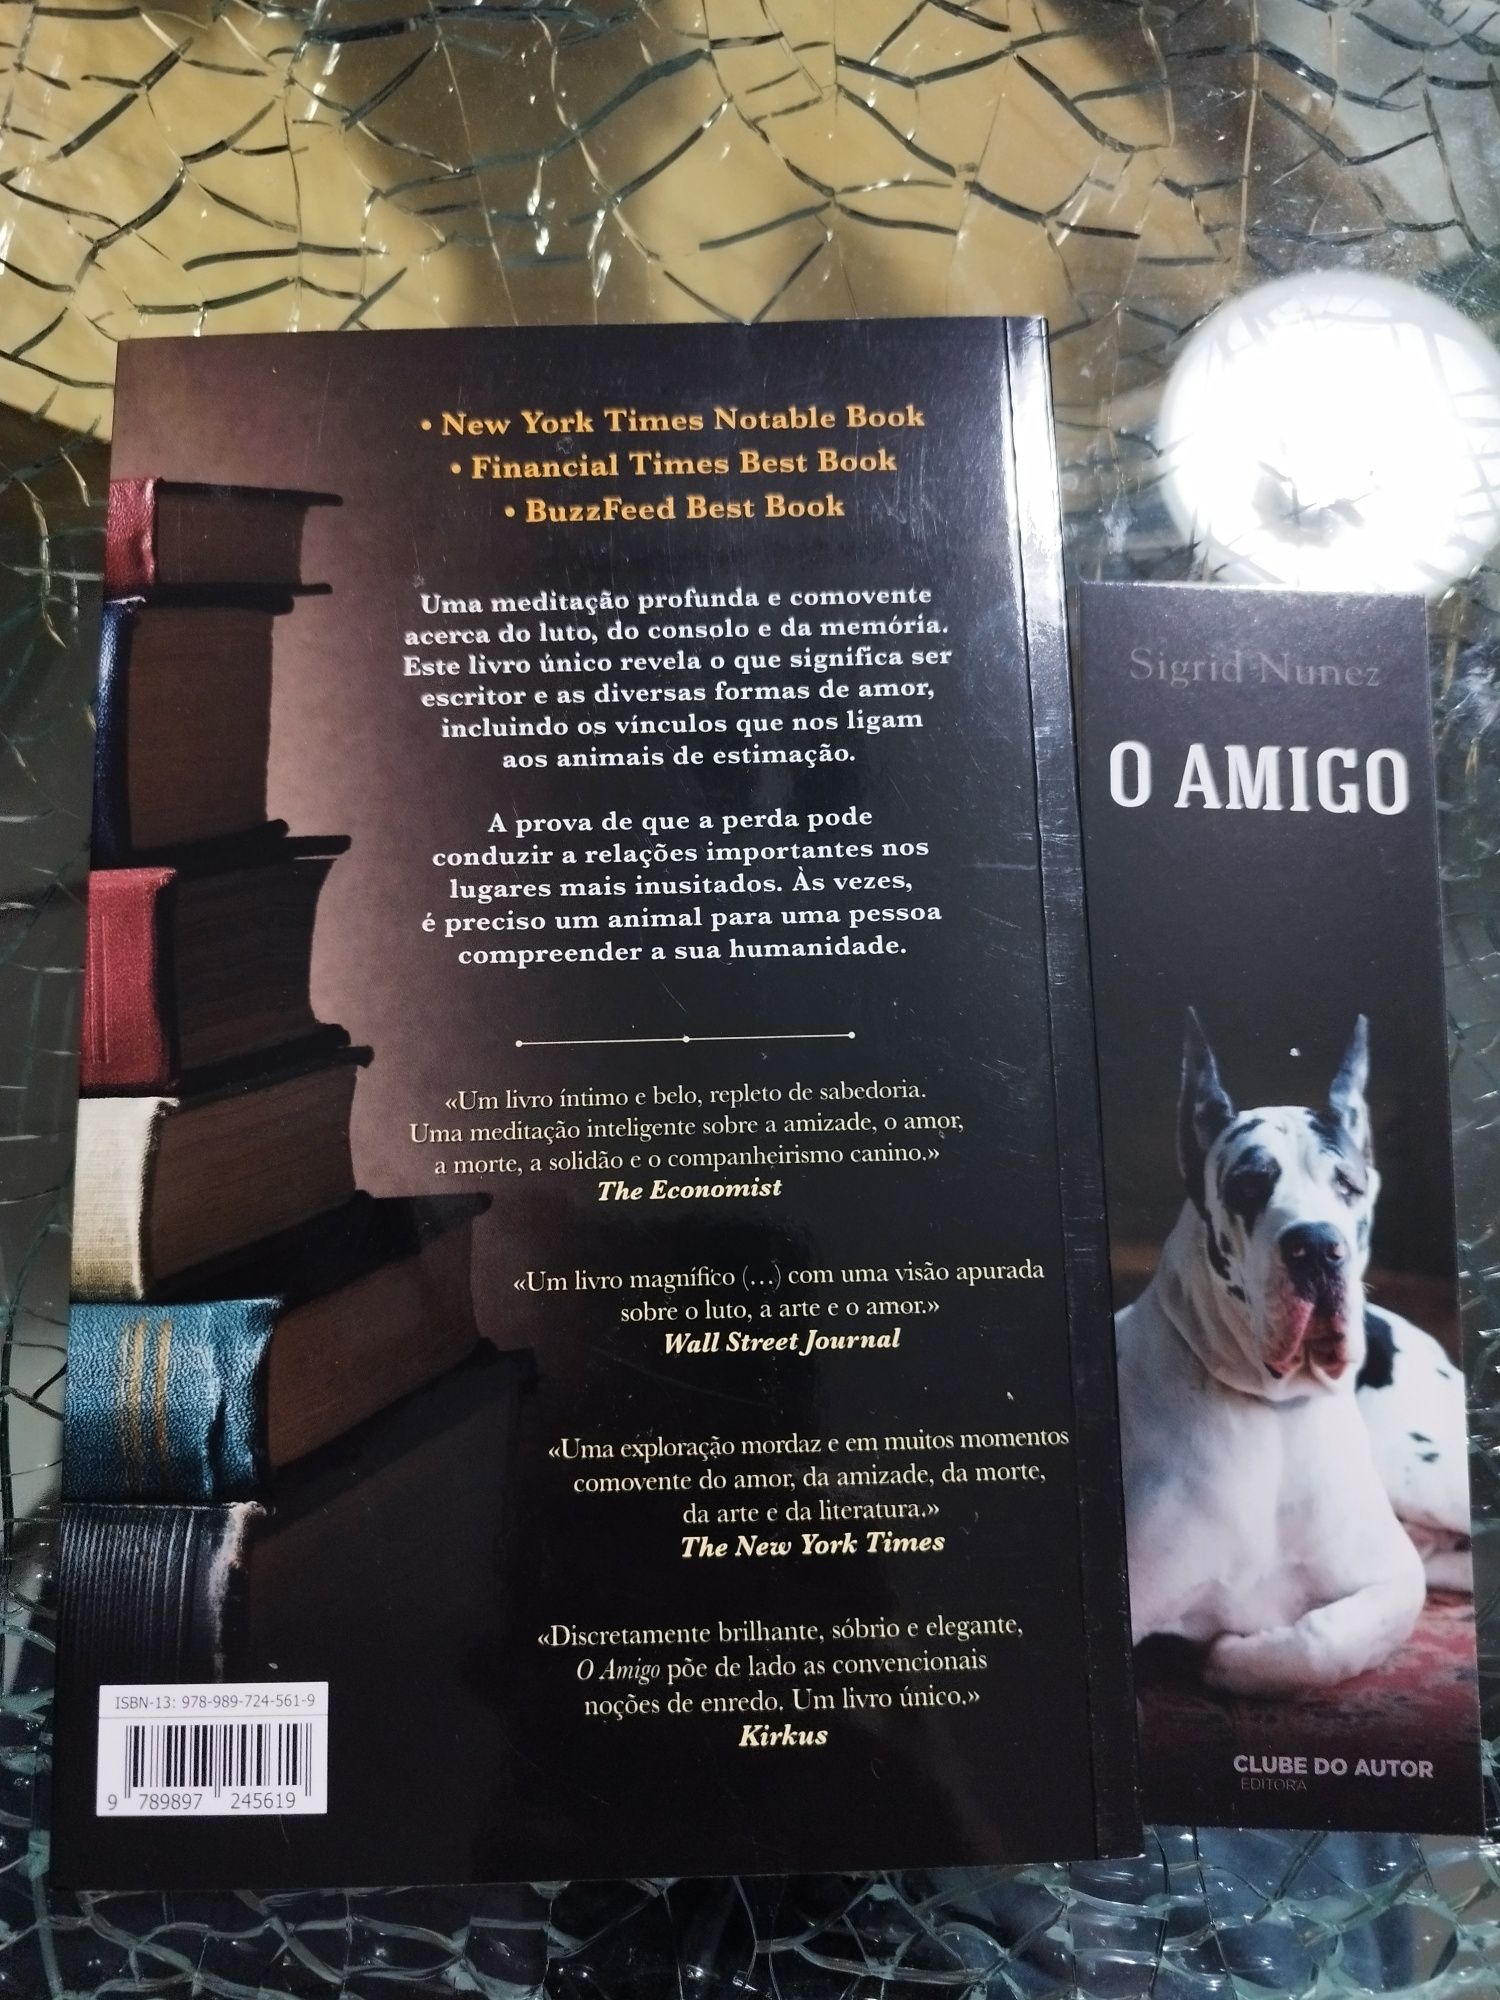 Livro " O amigo" de Sigrid Nunez